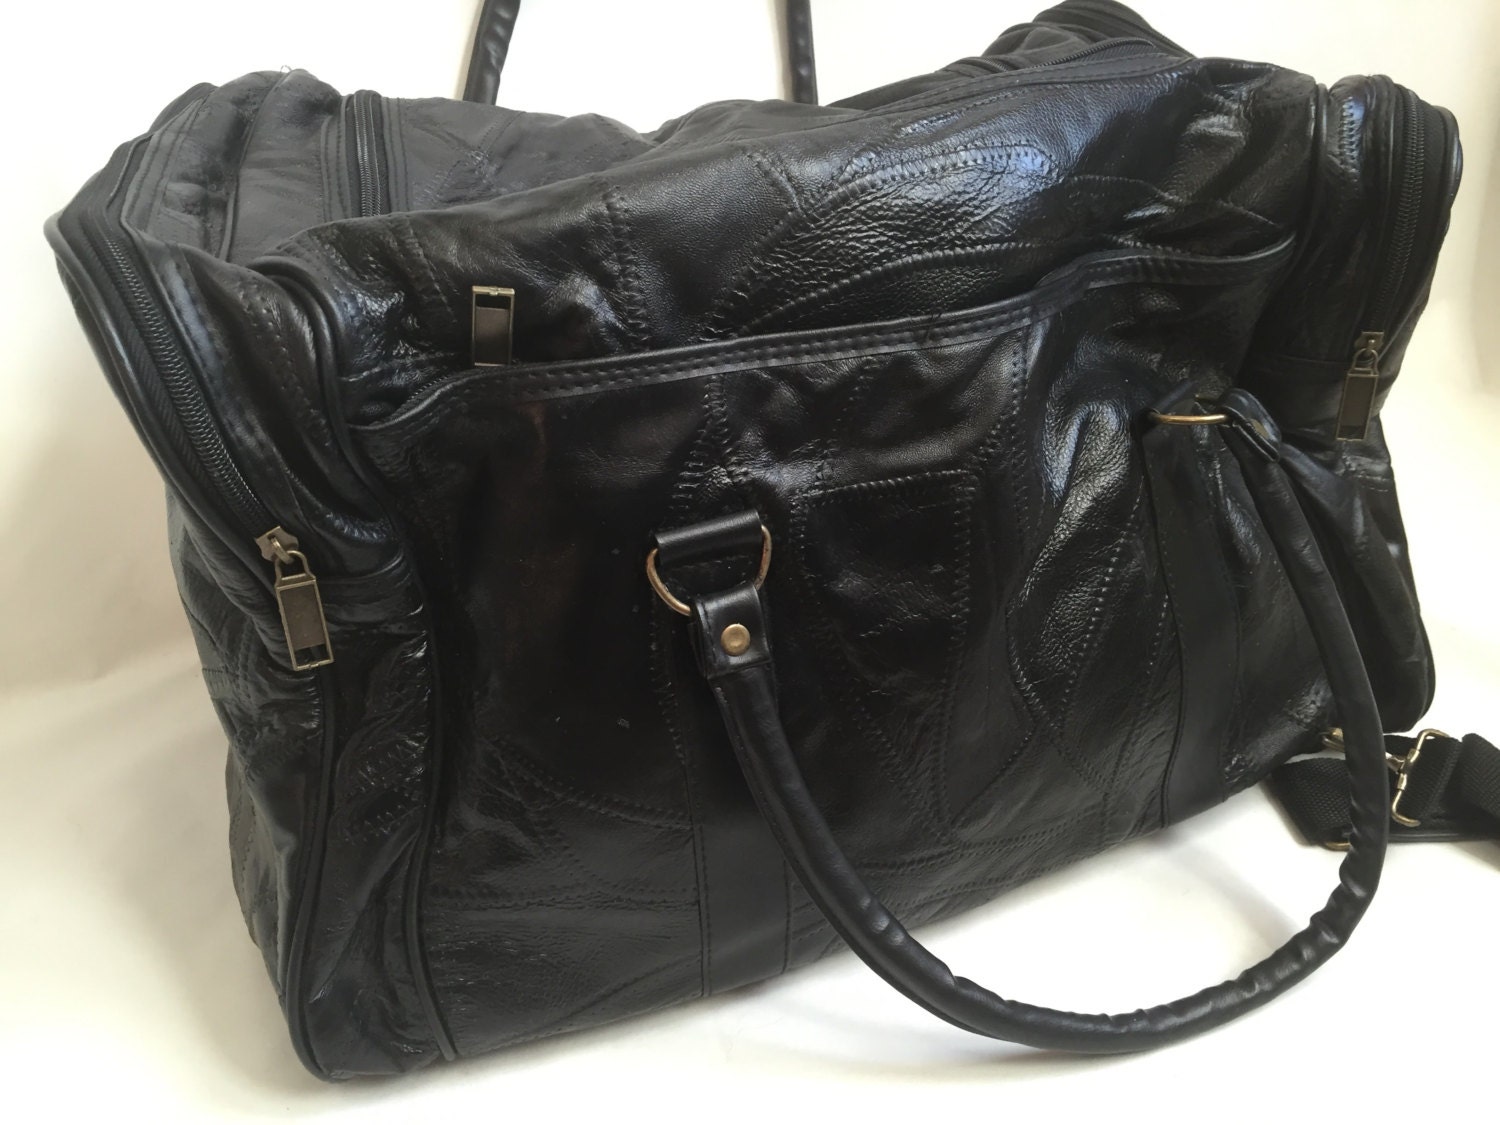 Black Leather Duffle Bag with Adjustable Shoulder Strap